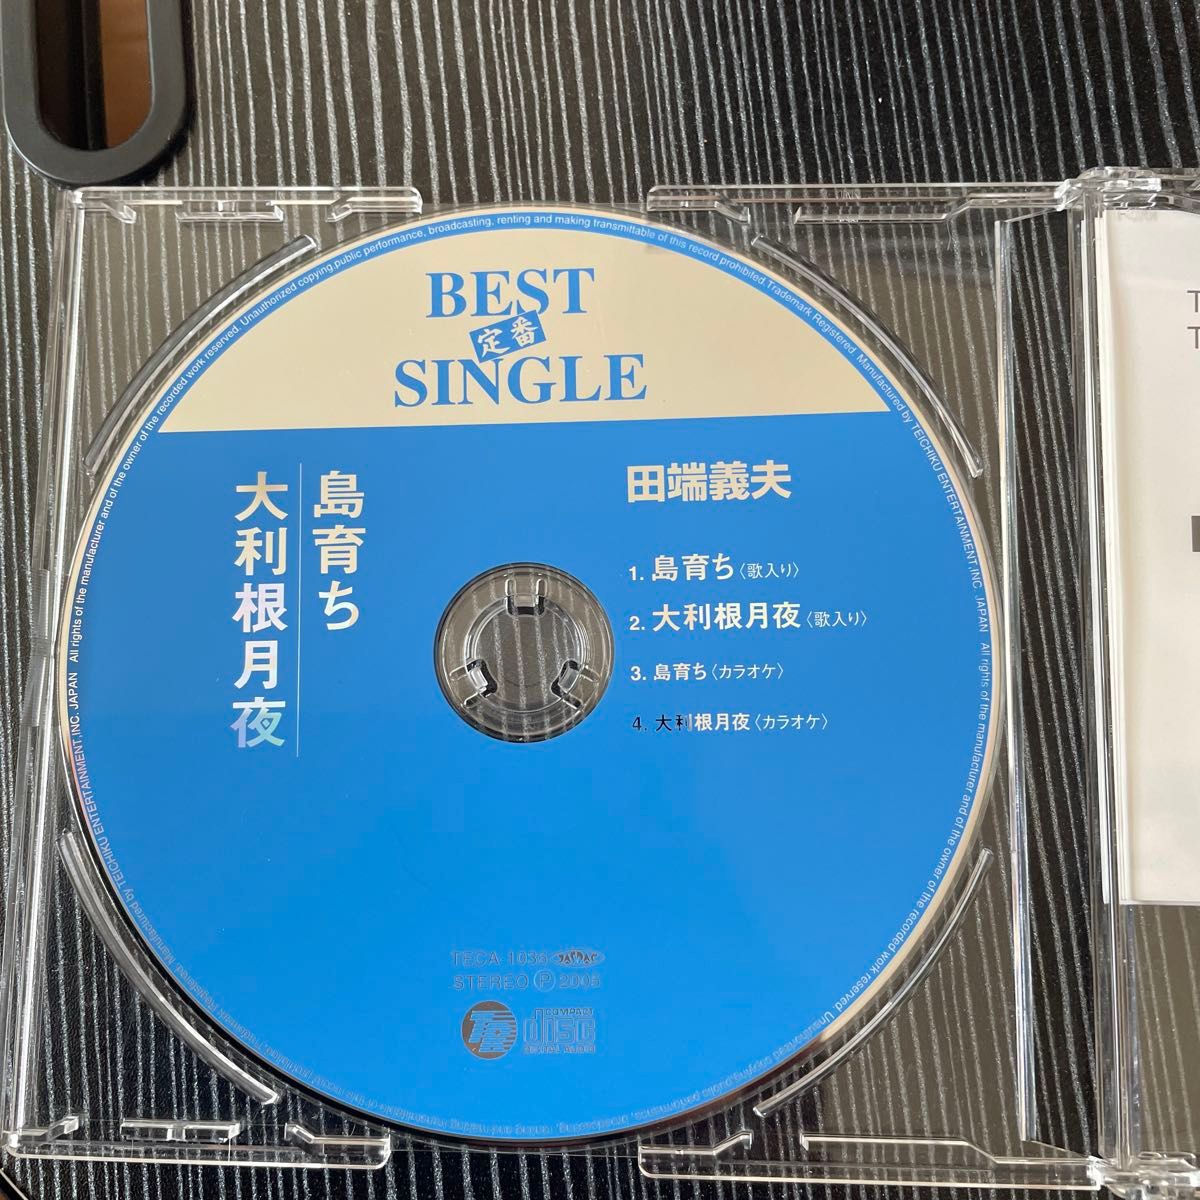 田端義夫　CD